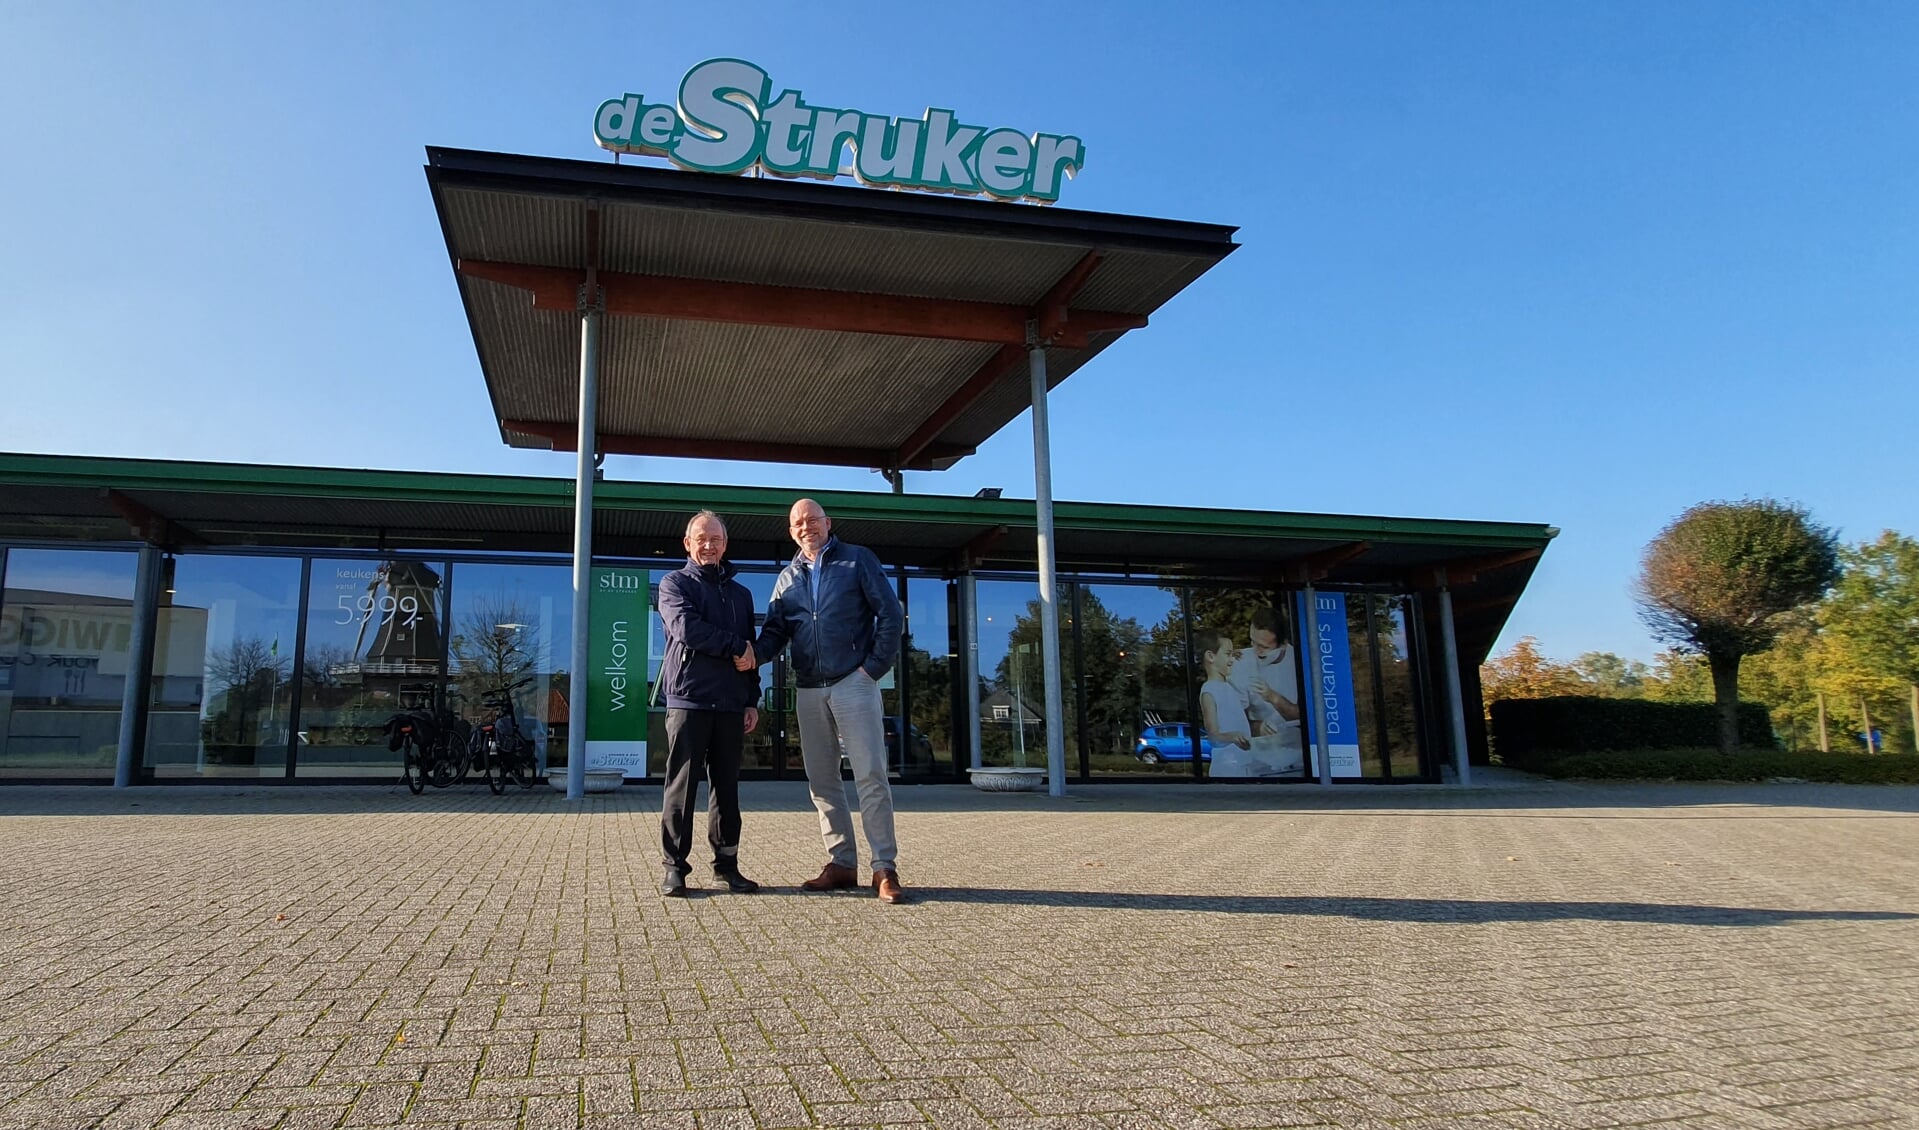 Links Wim Stemerdink en rechts Chris Hermsen voor de Struker. Foto PR